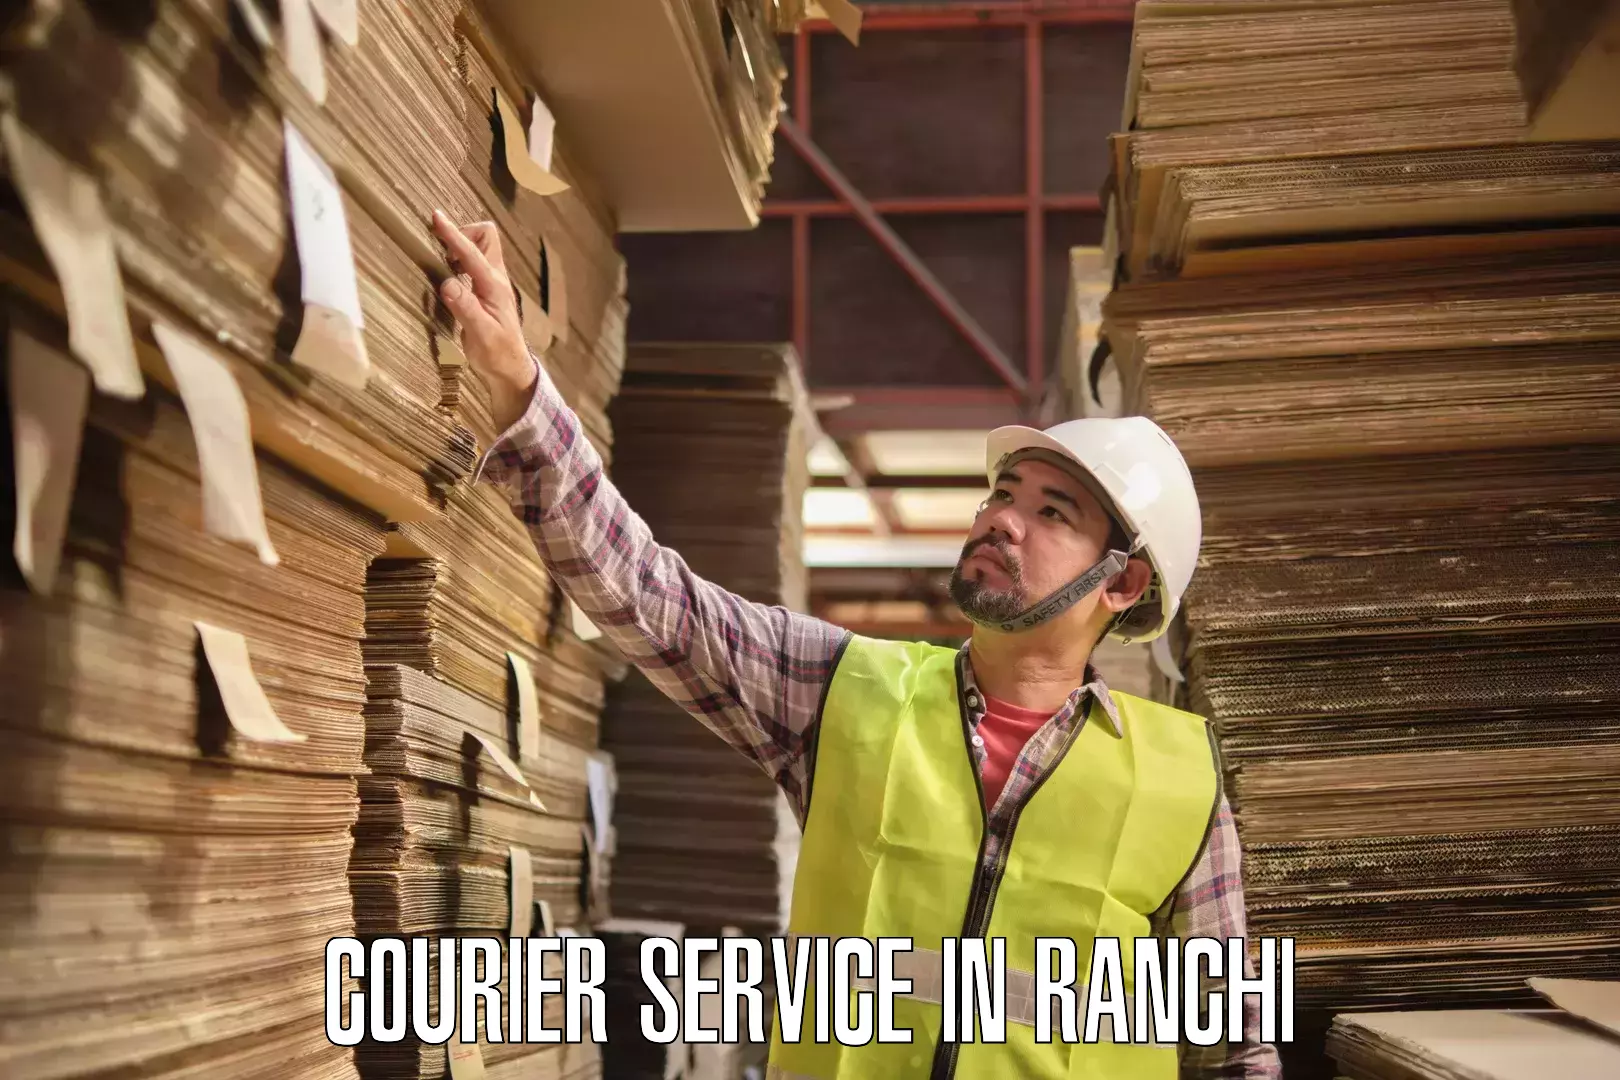 Customer-centric shipping in Ranchi